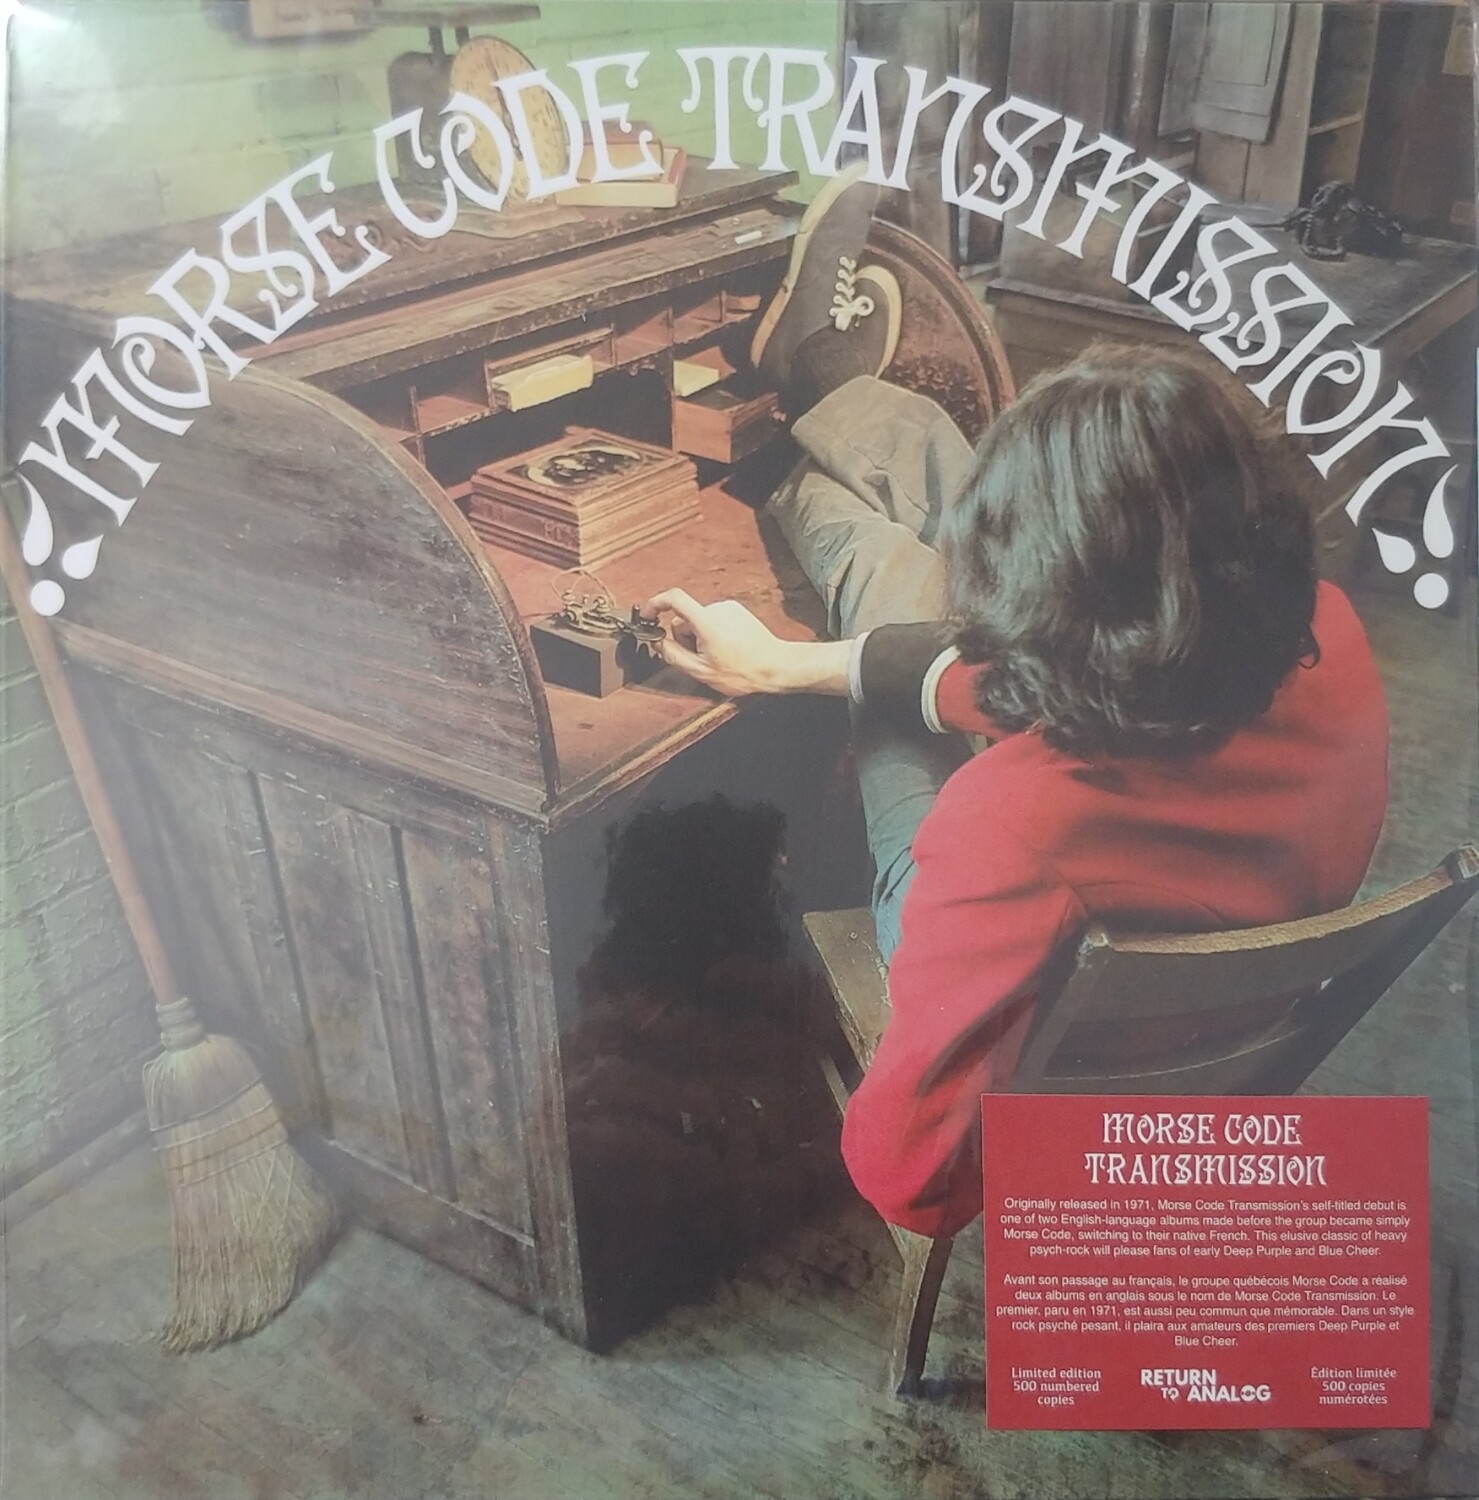 Morse Code - Transmission